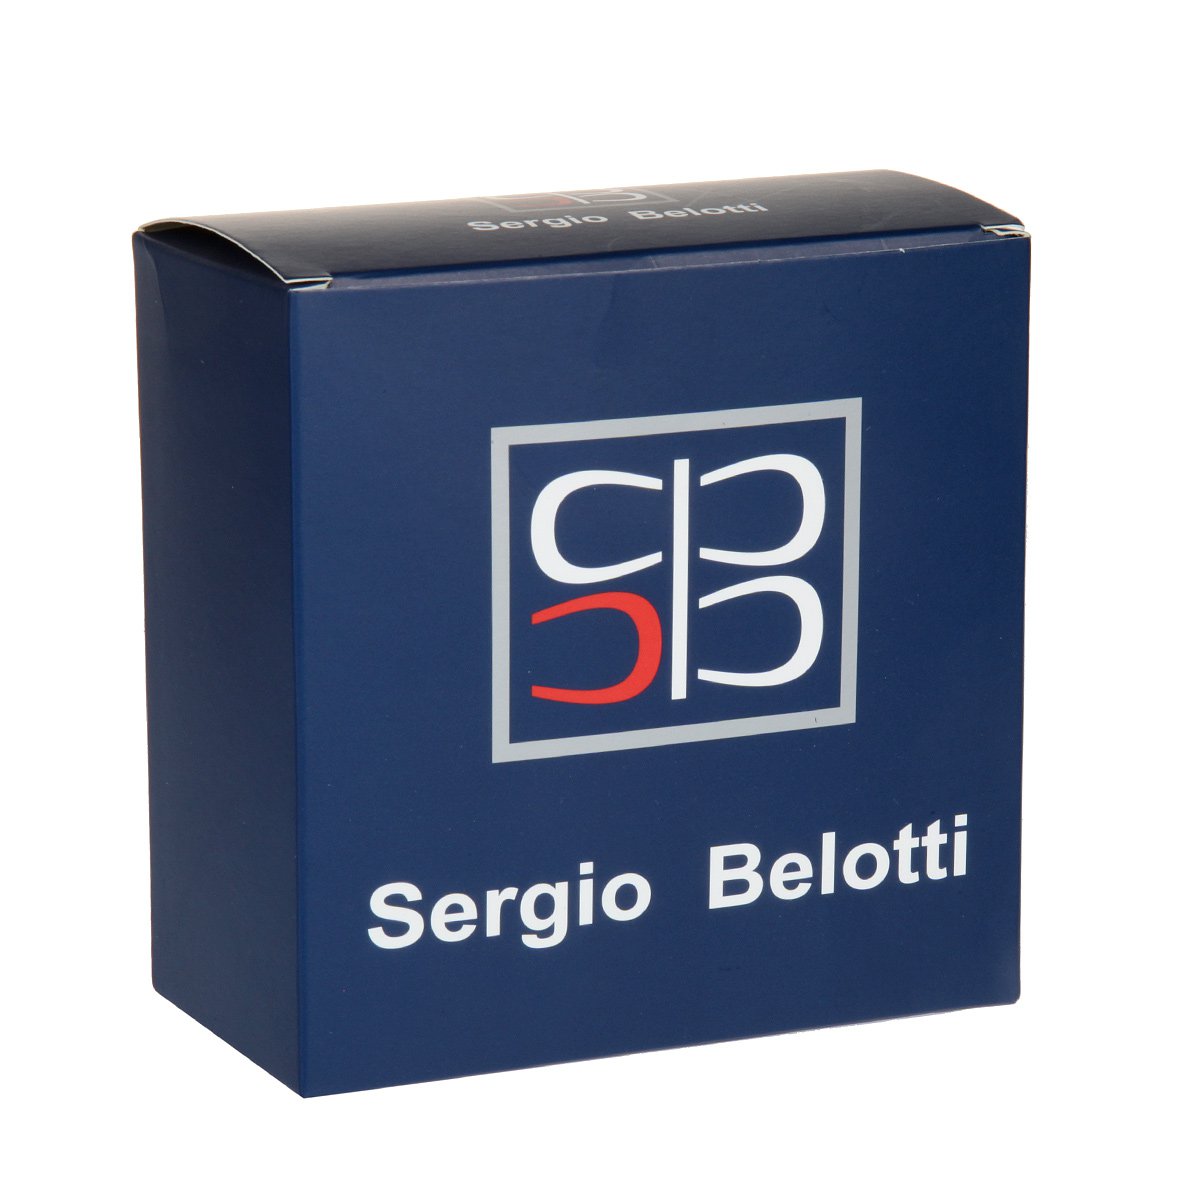 Ремень мужской Sergio Belotti 10851/40 коричневый 125